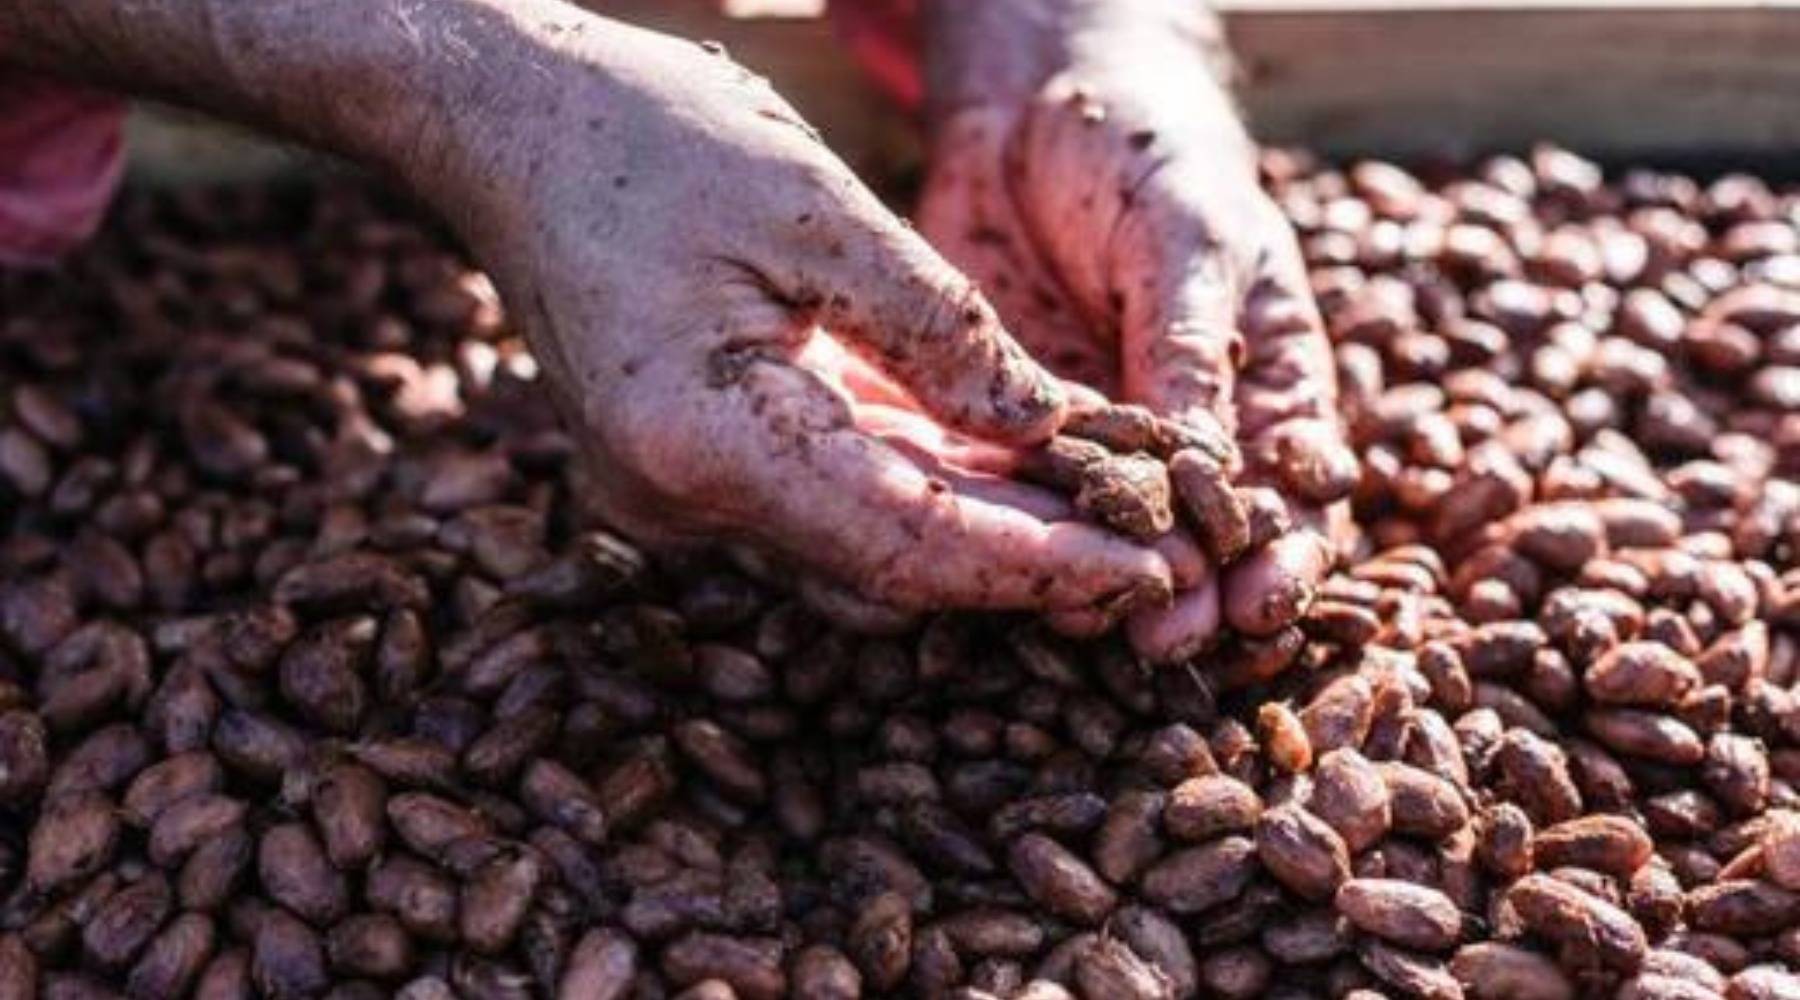 Kakaobohnen werden nach dem fermentieren zum trocknen ausgelegt